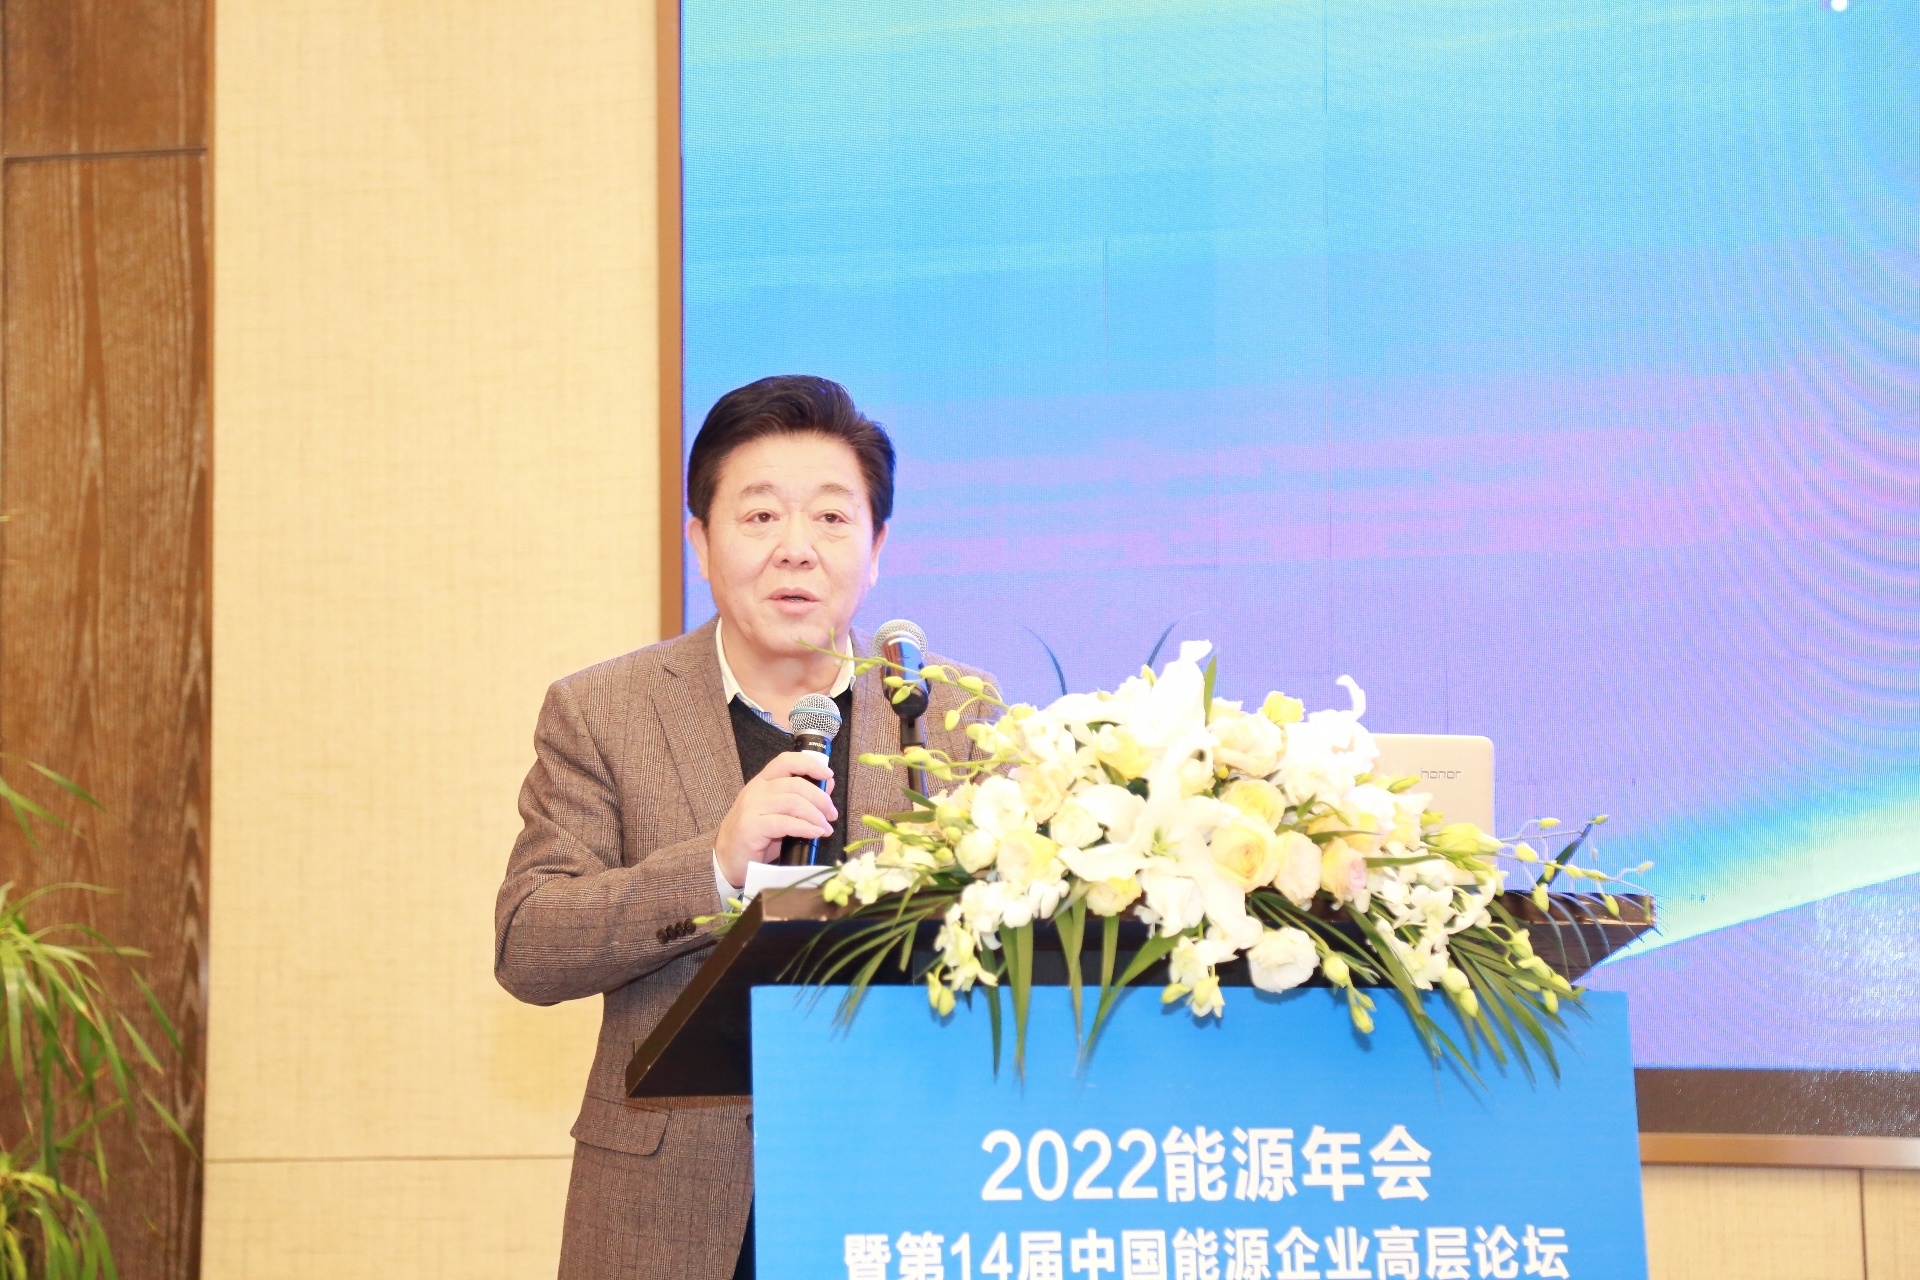 聚焦转型、共寻方向 第14届中国能源企业高层论坛在京召开